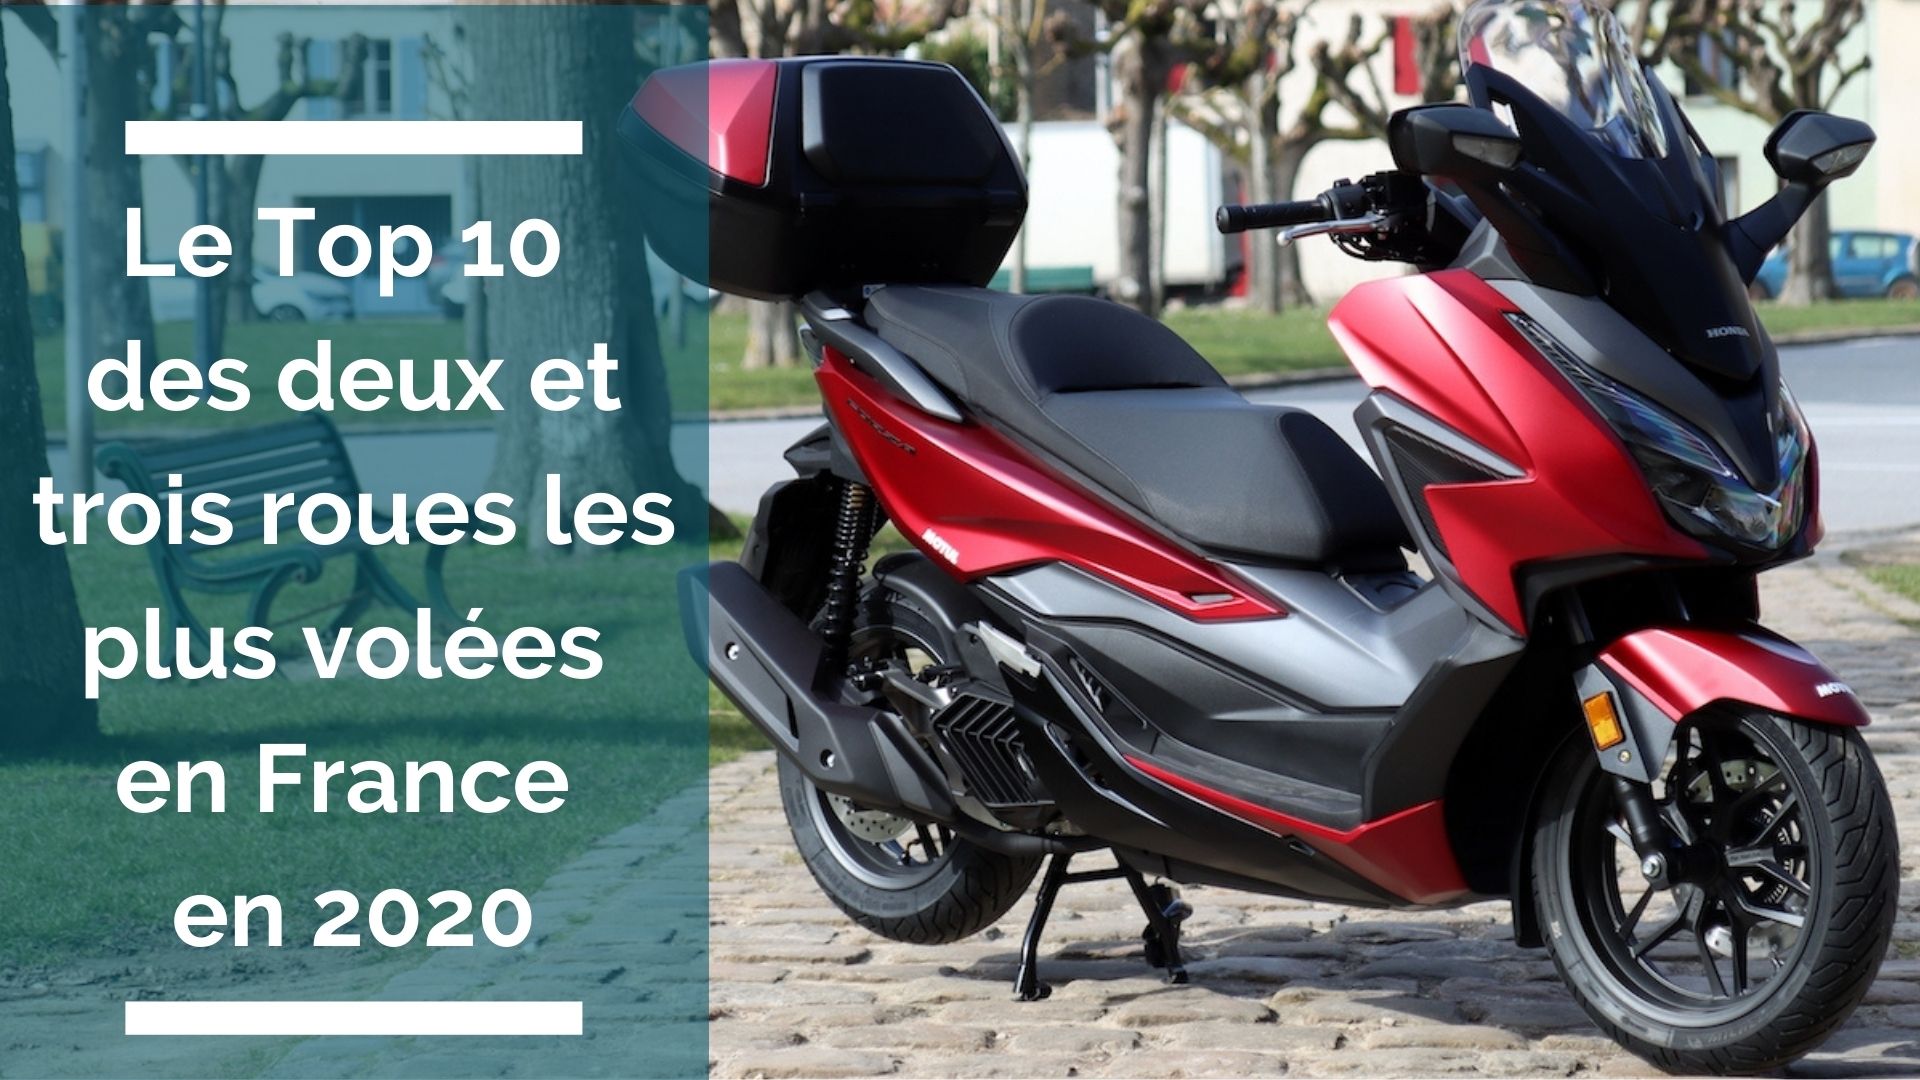 Le top 10 des motos/scooters électriques les plus vendus en France